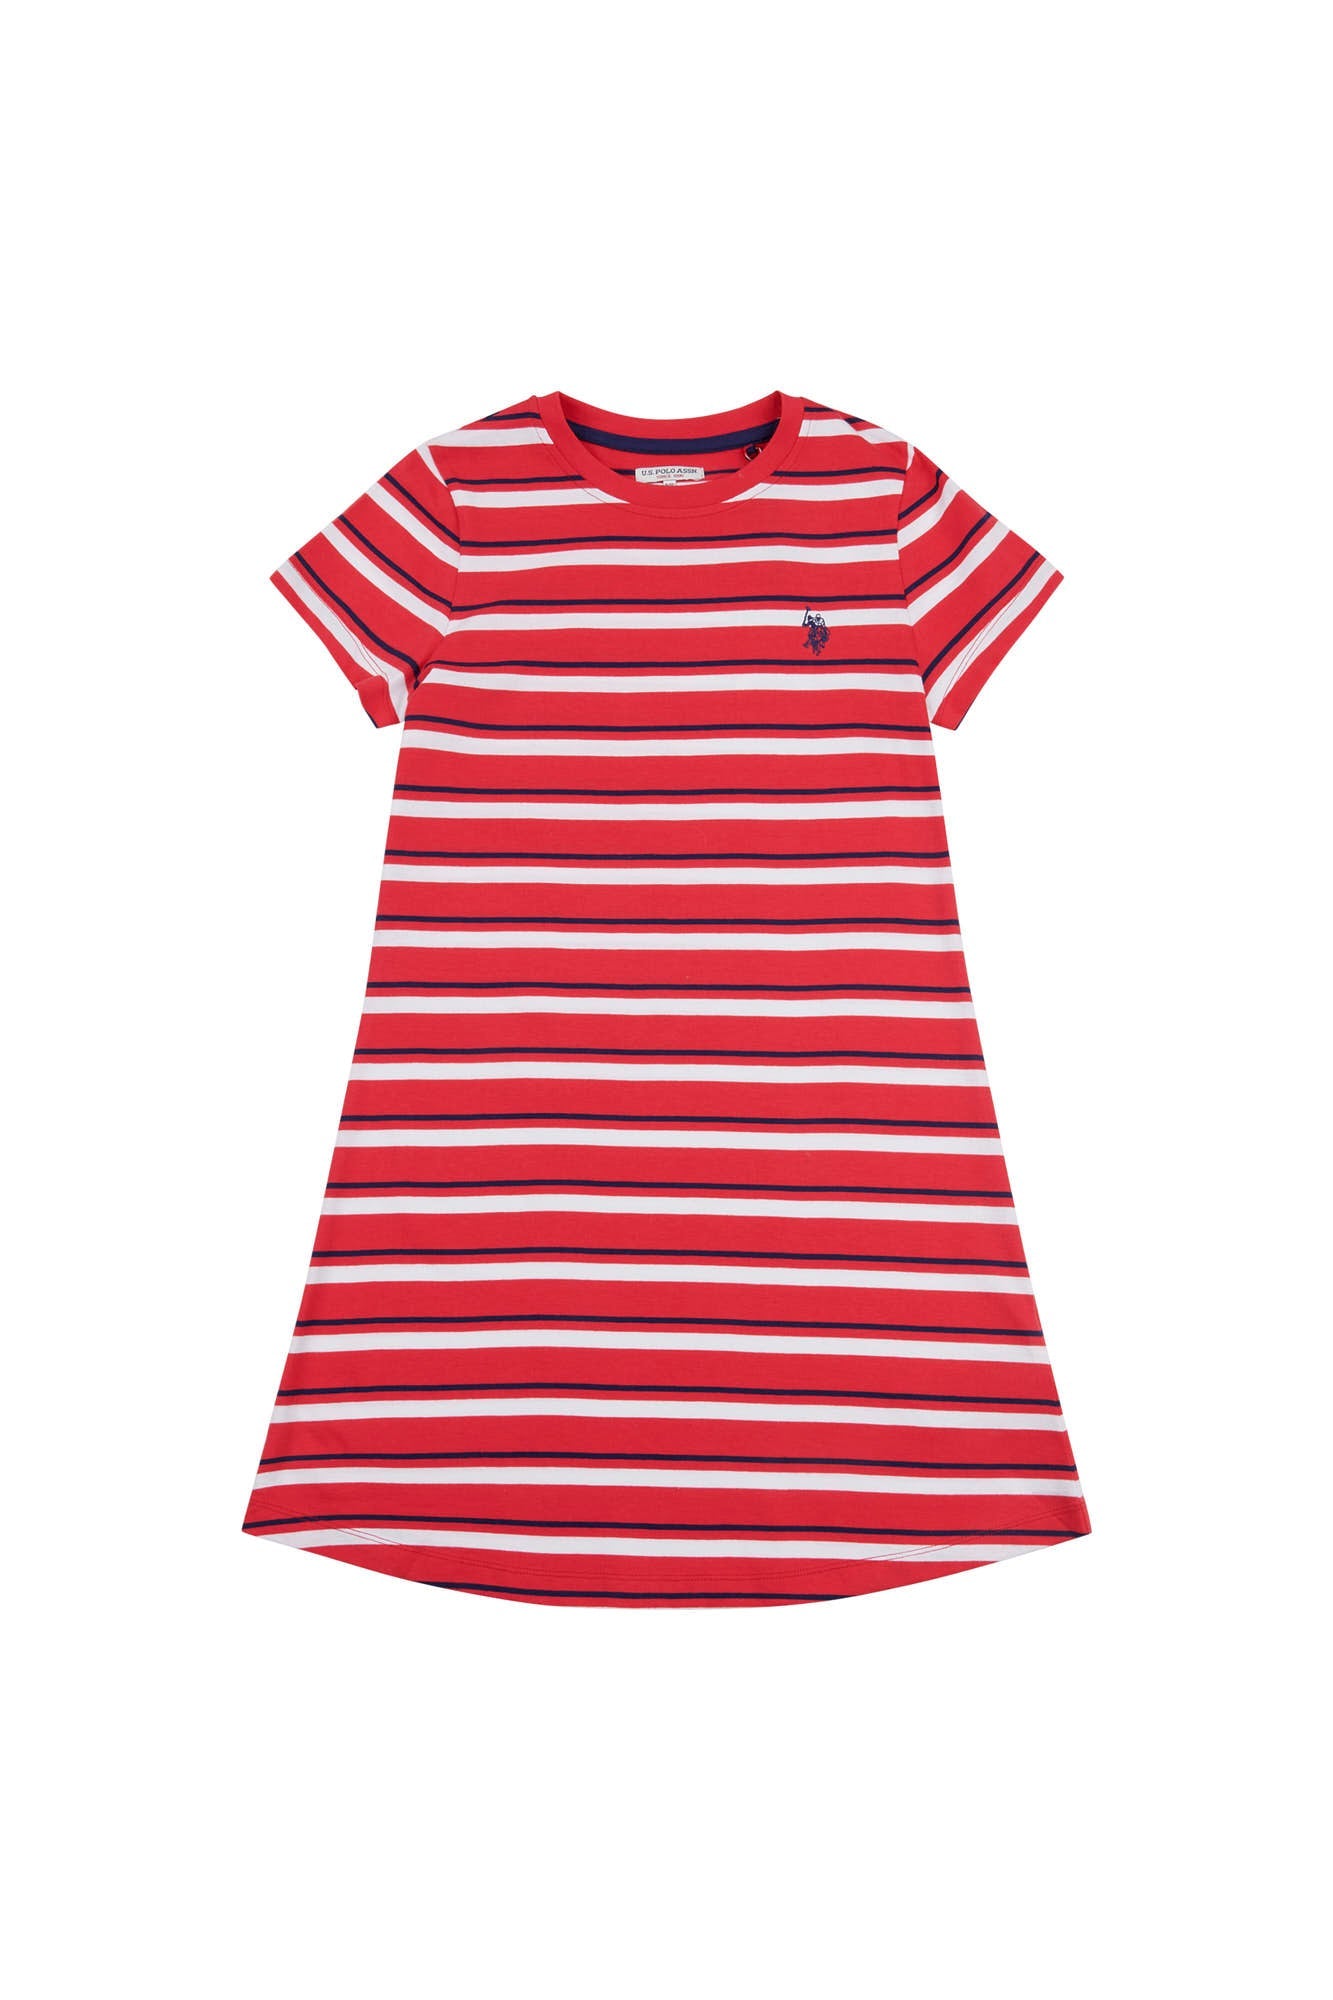 U.S. Polo Assn. Girls Stripe Dress in Watermelon